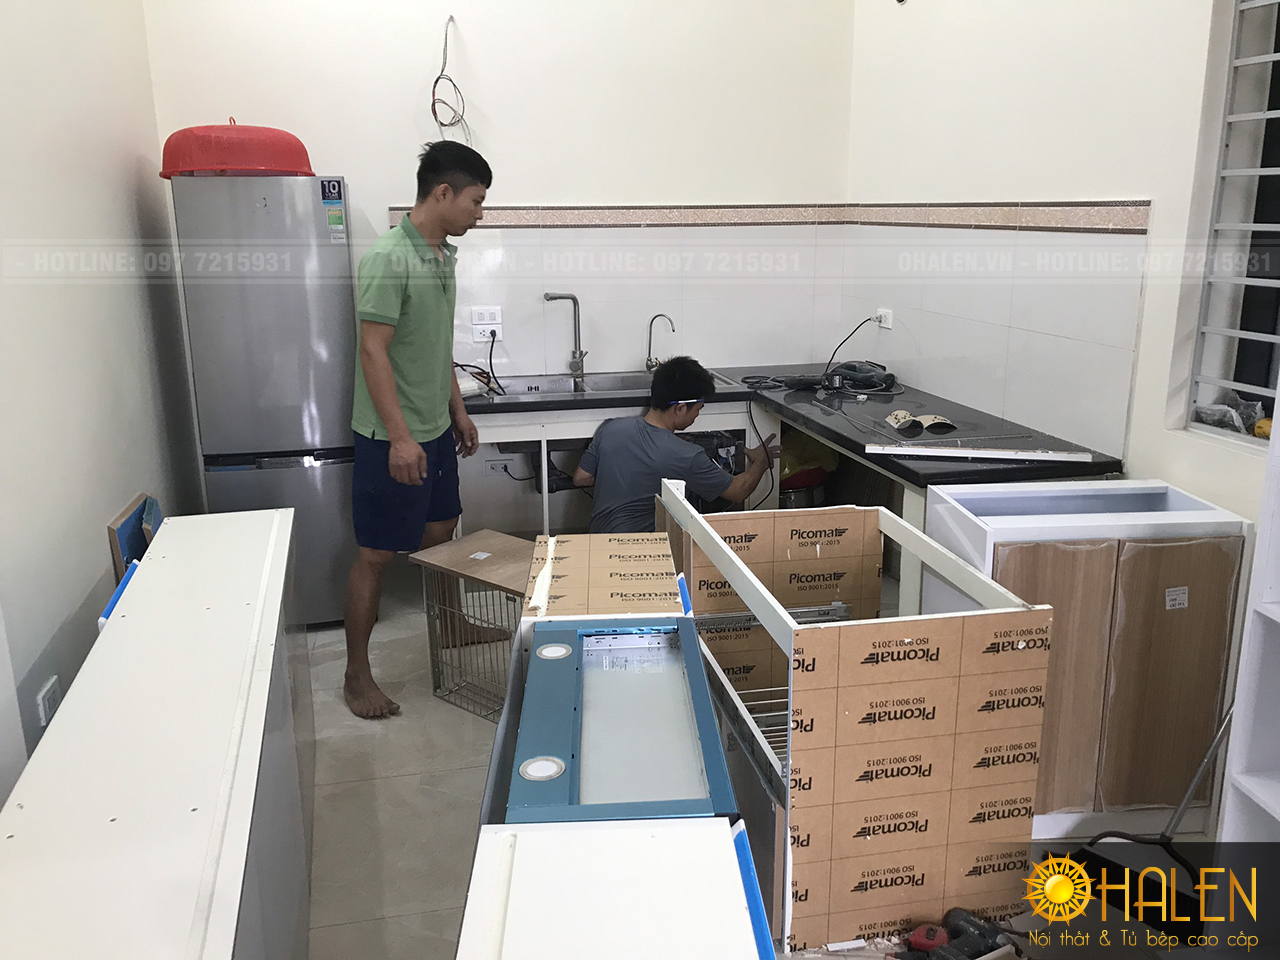 Bắt đầu quá trình đóng tủ bếp ở Bắc Từ Liêm - Hà Nội